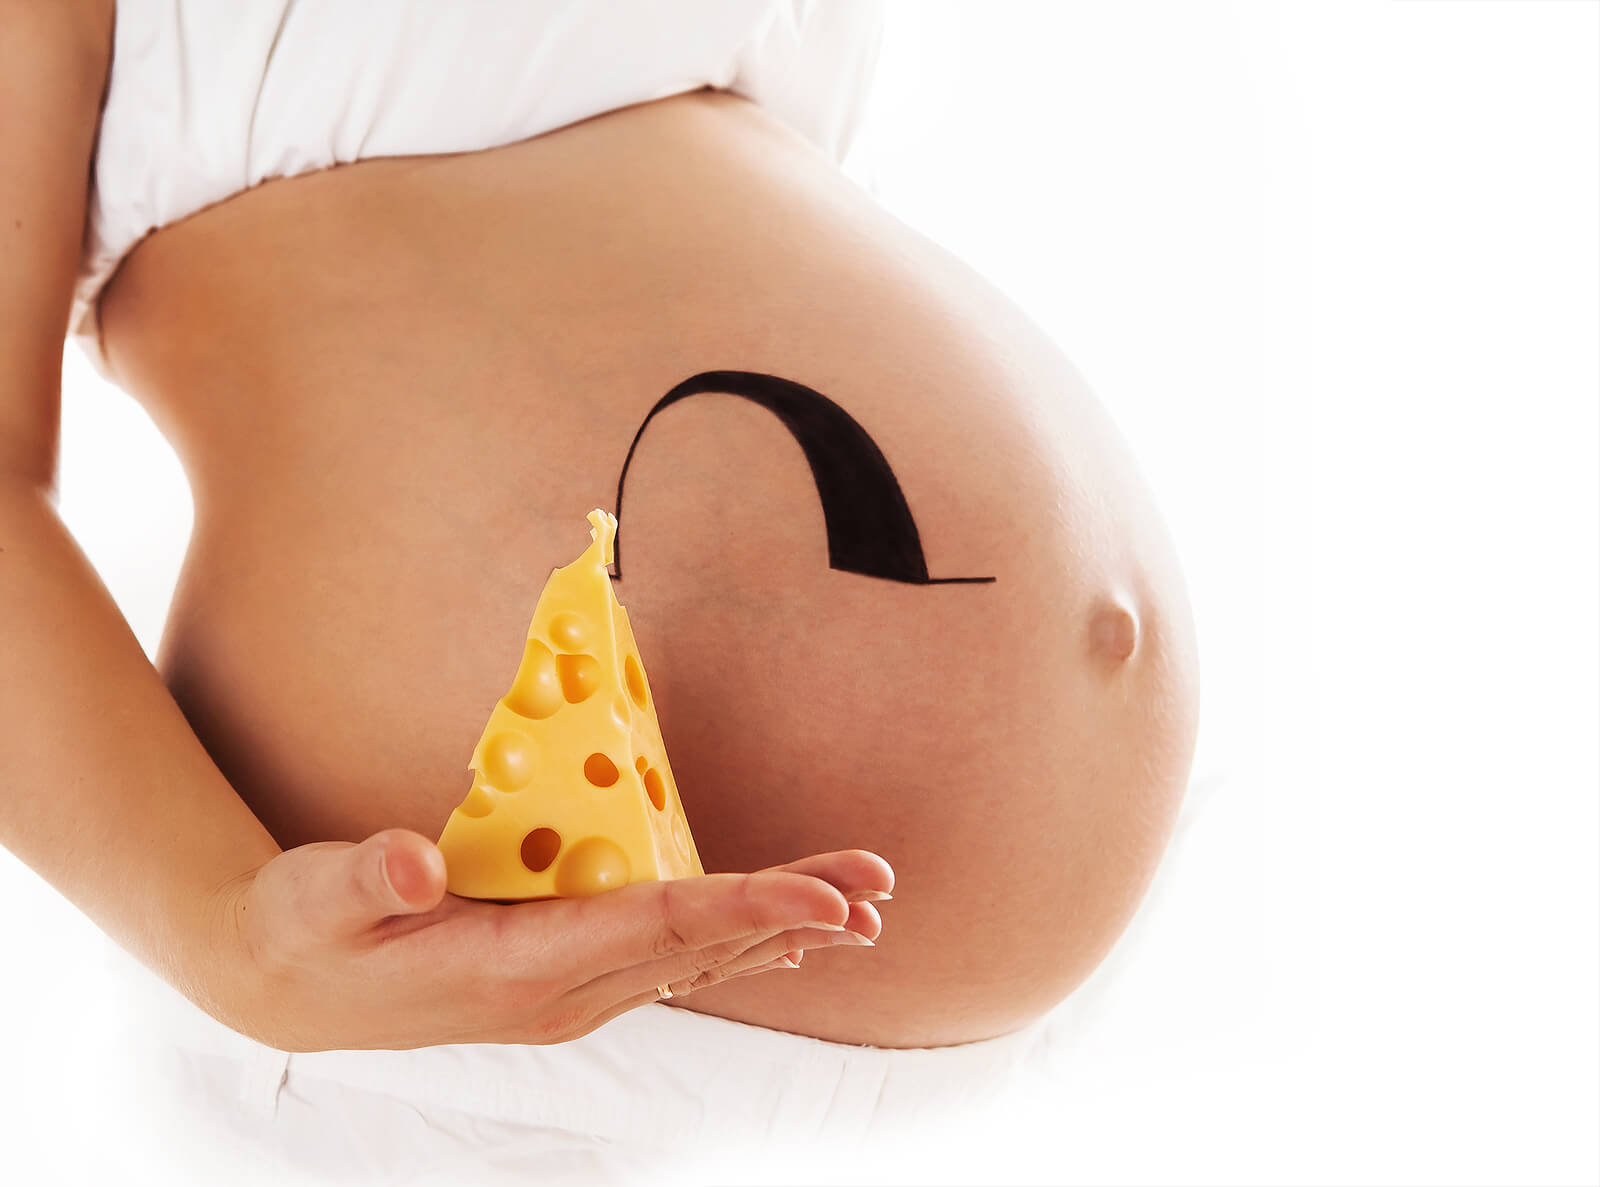 Mujer embarazada junto a una porción de queso.